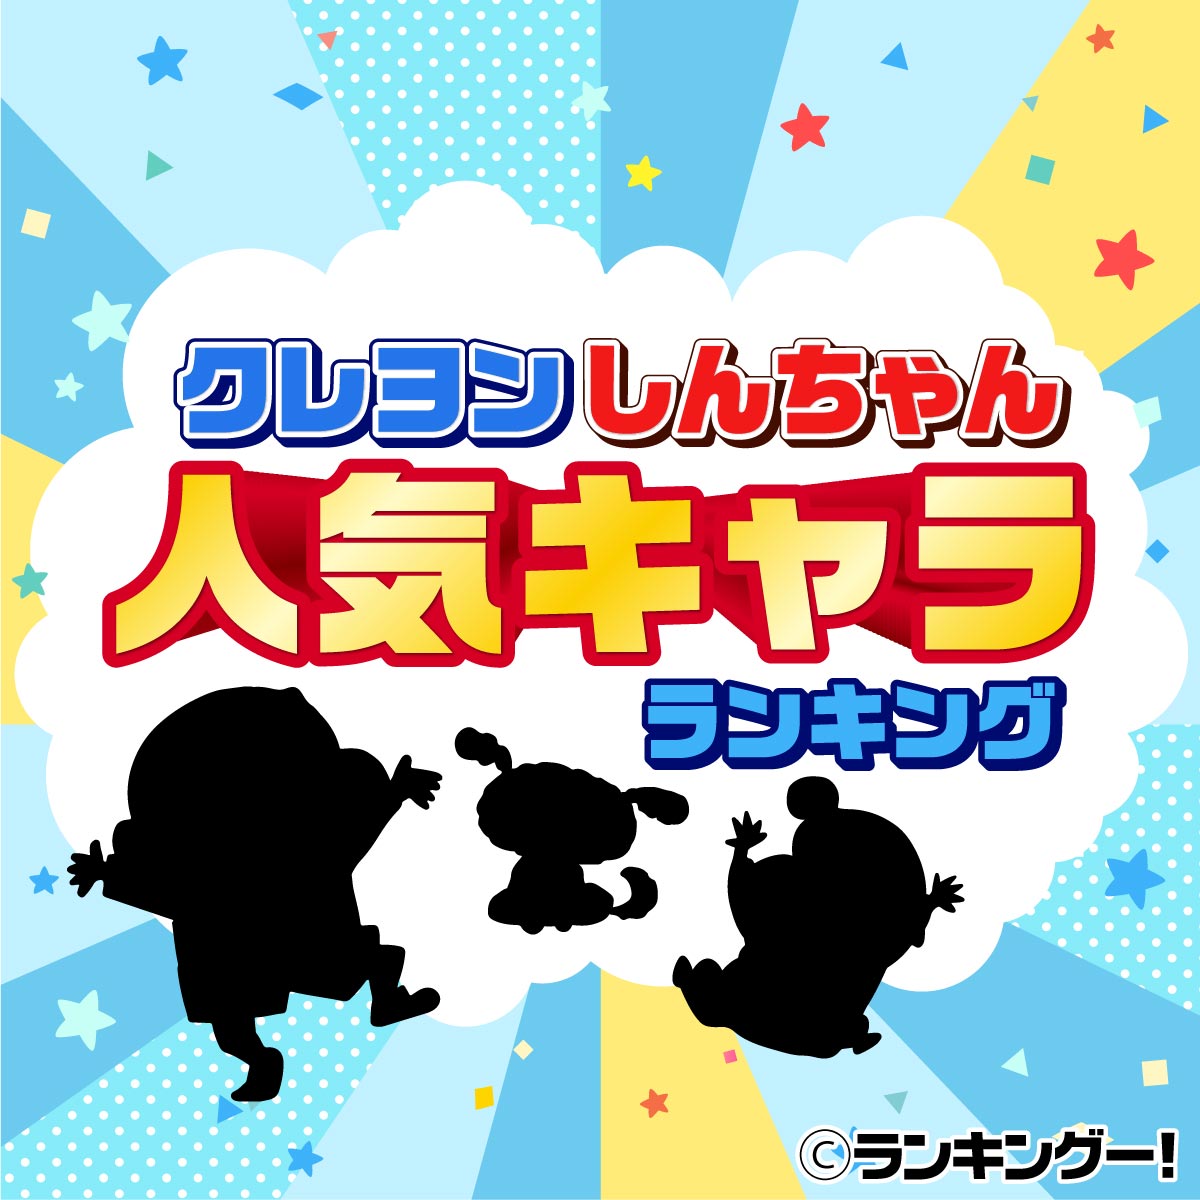 クレヨンしんちゃんキャラクター人気ランキングtop20 2020年最新版 3 5位 ランキングー